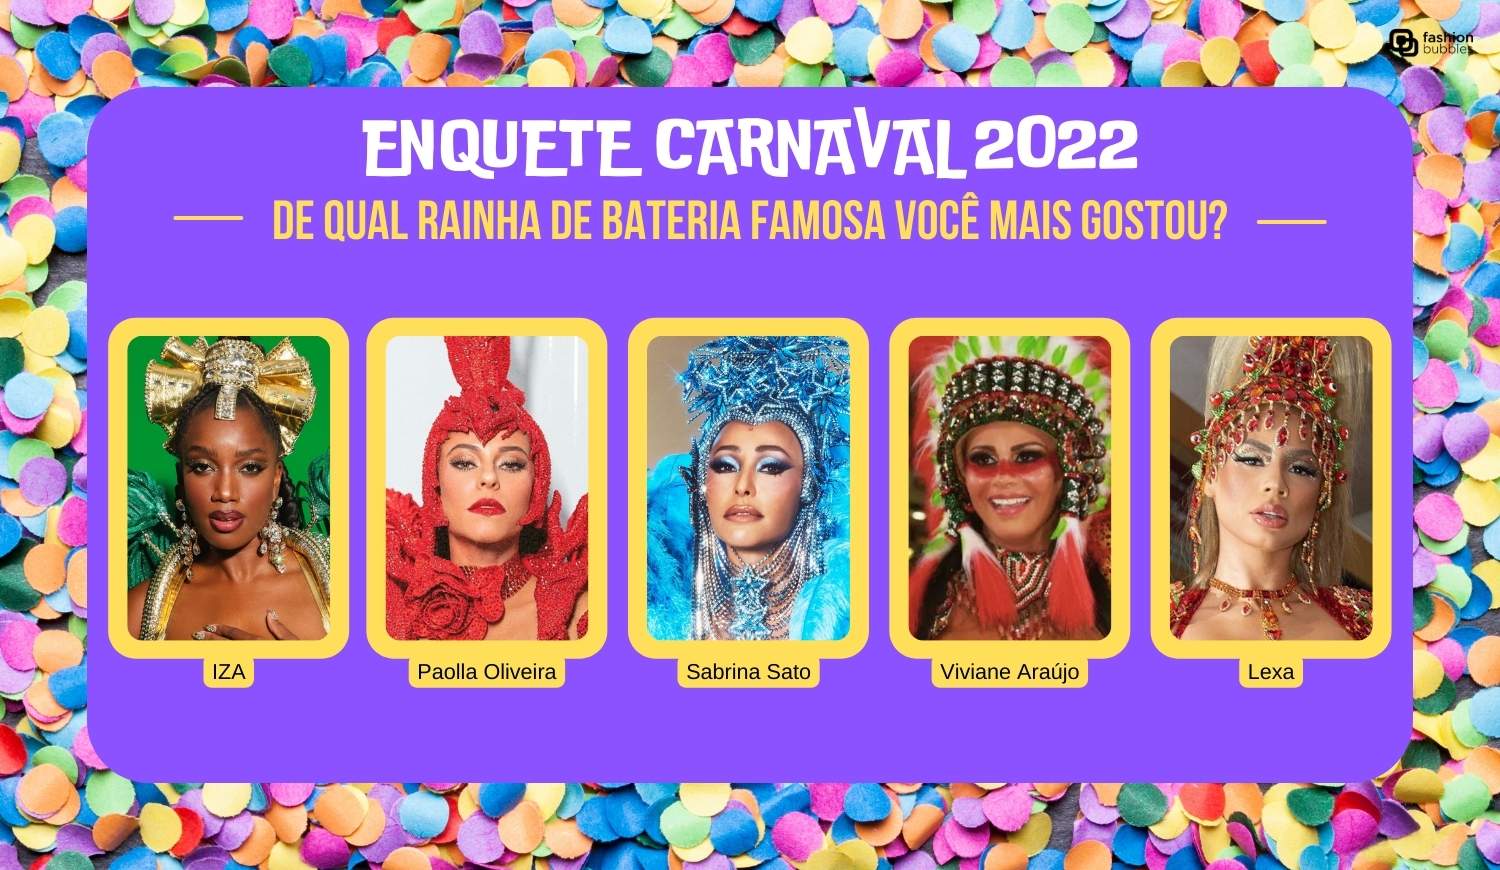 Enquete Carnaval 2022: de qual rainha de bateria famosa você mais gostou?